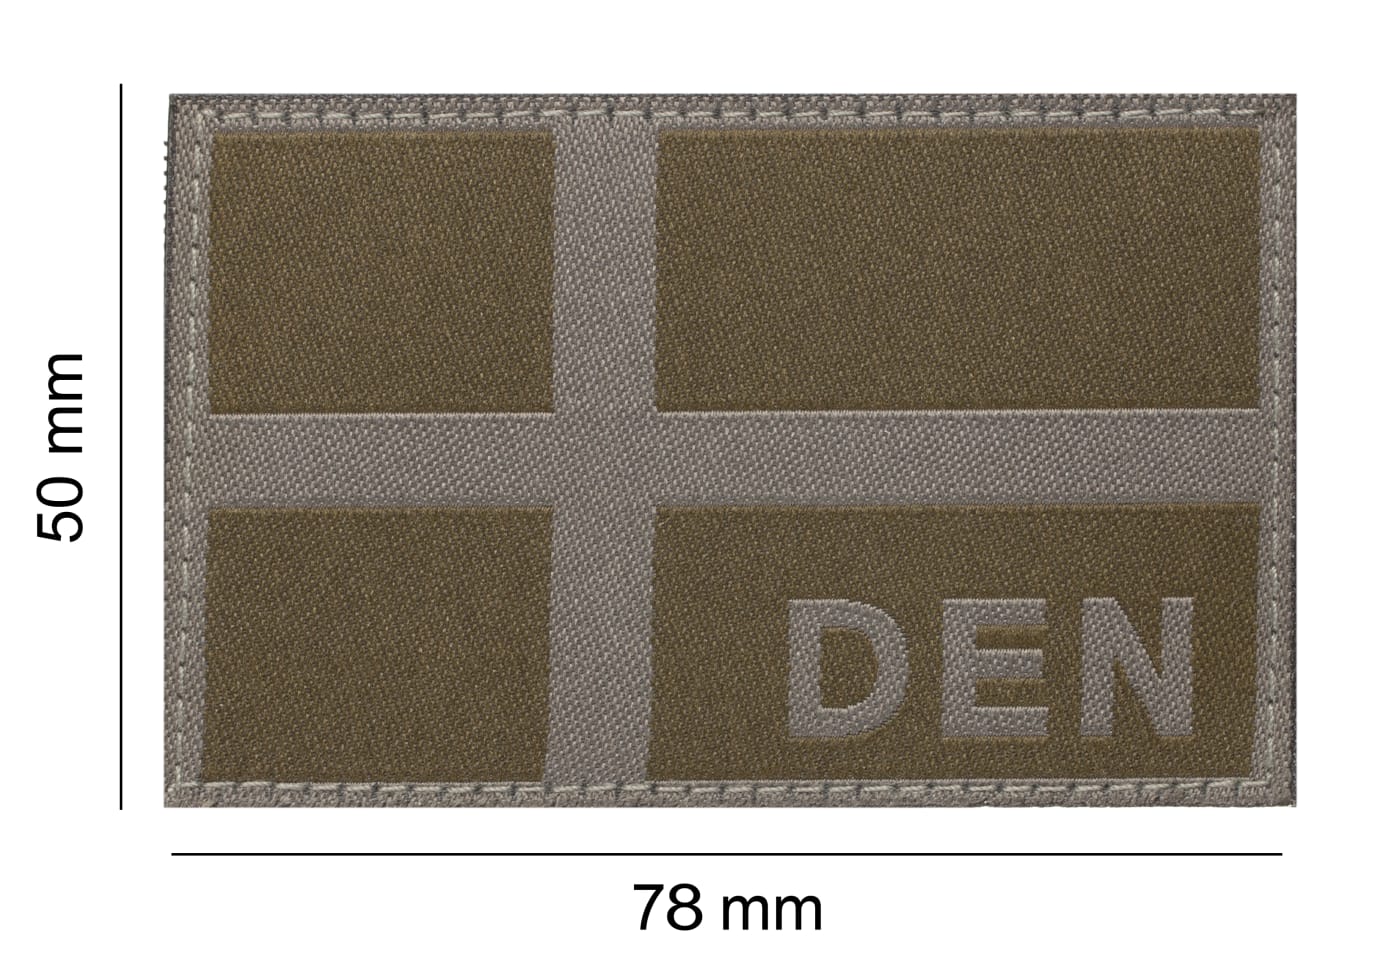 Clawgear Denmark Flag Patch